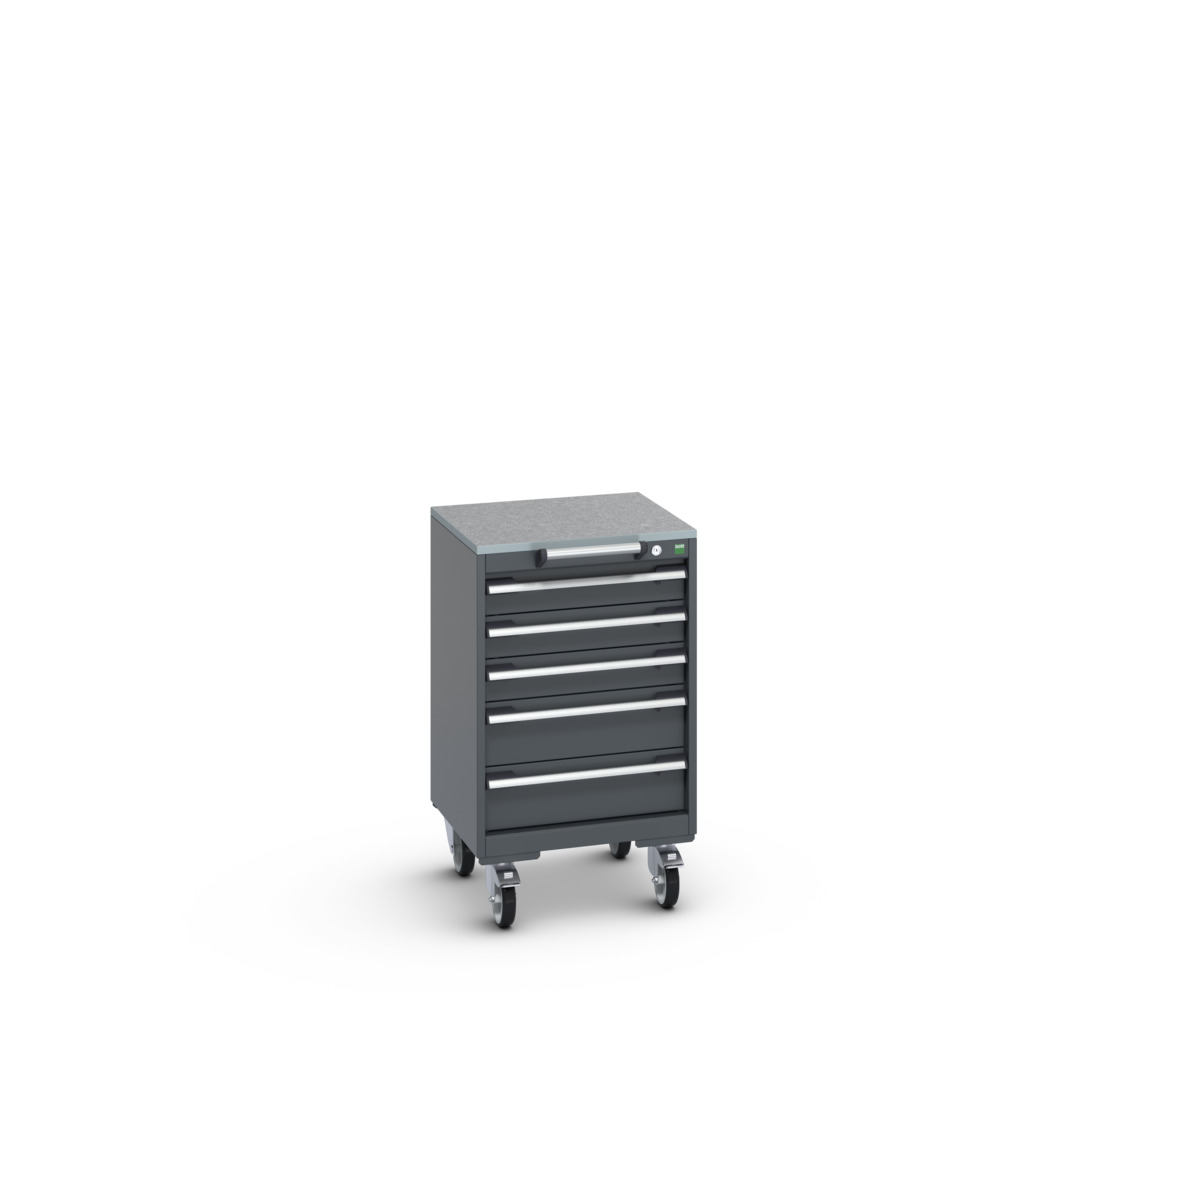 40402138.77V - cubio mobile cabinet